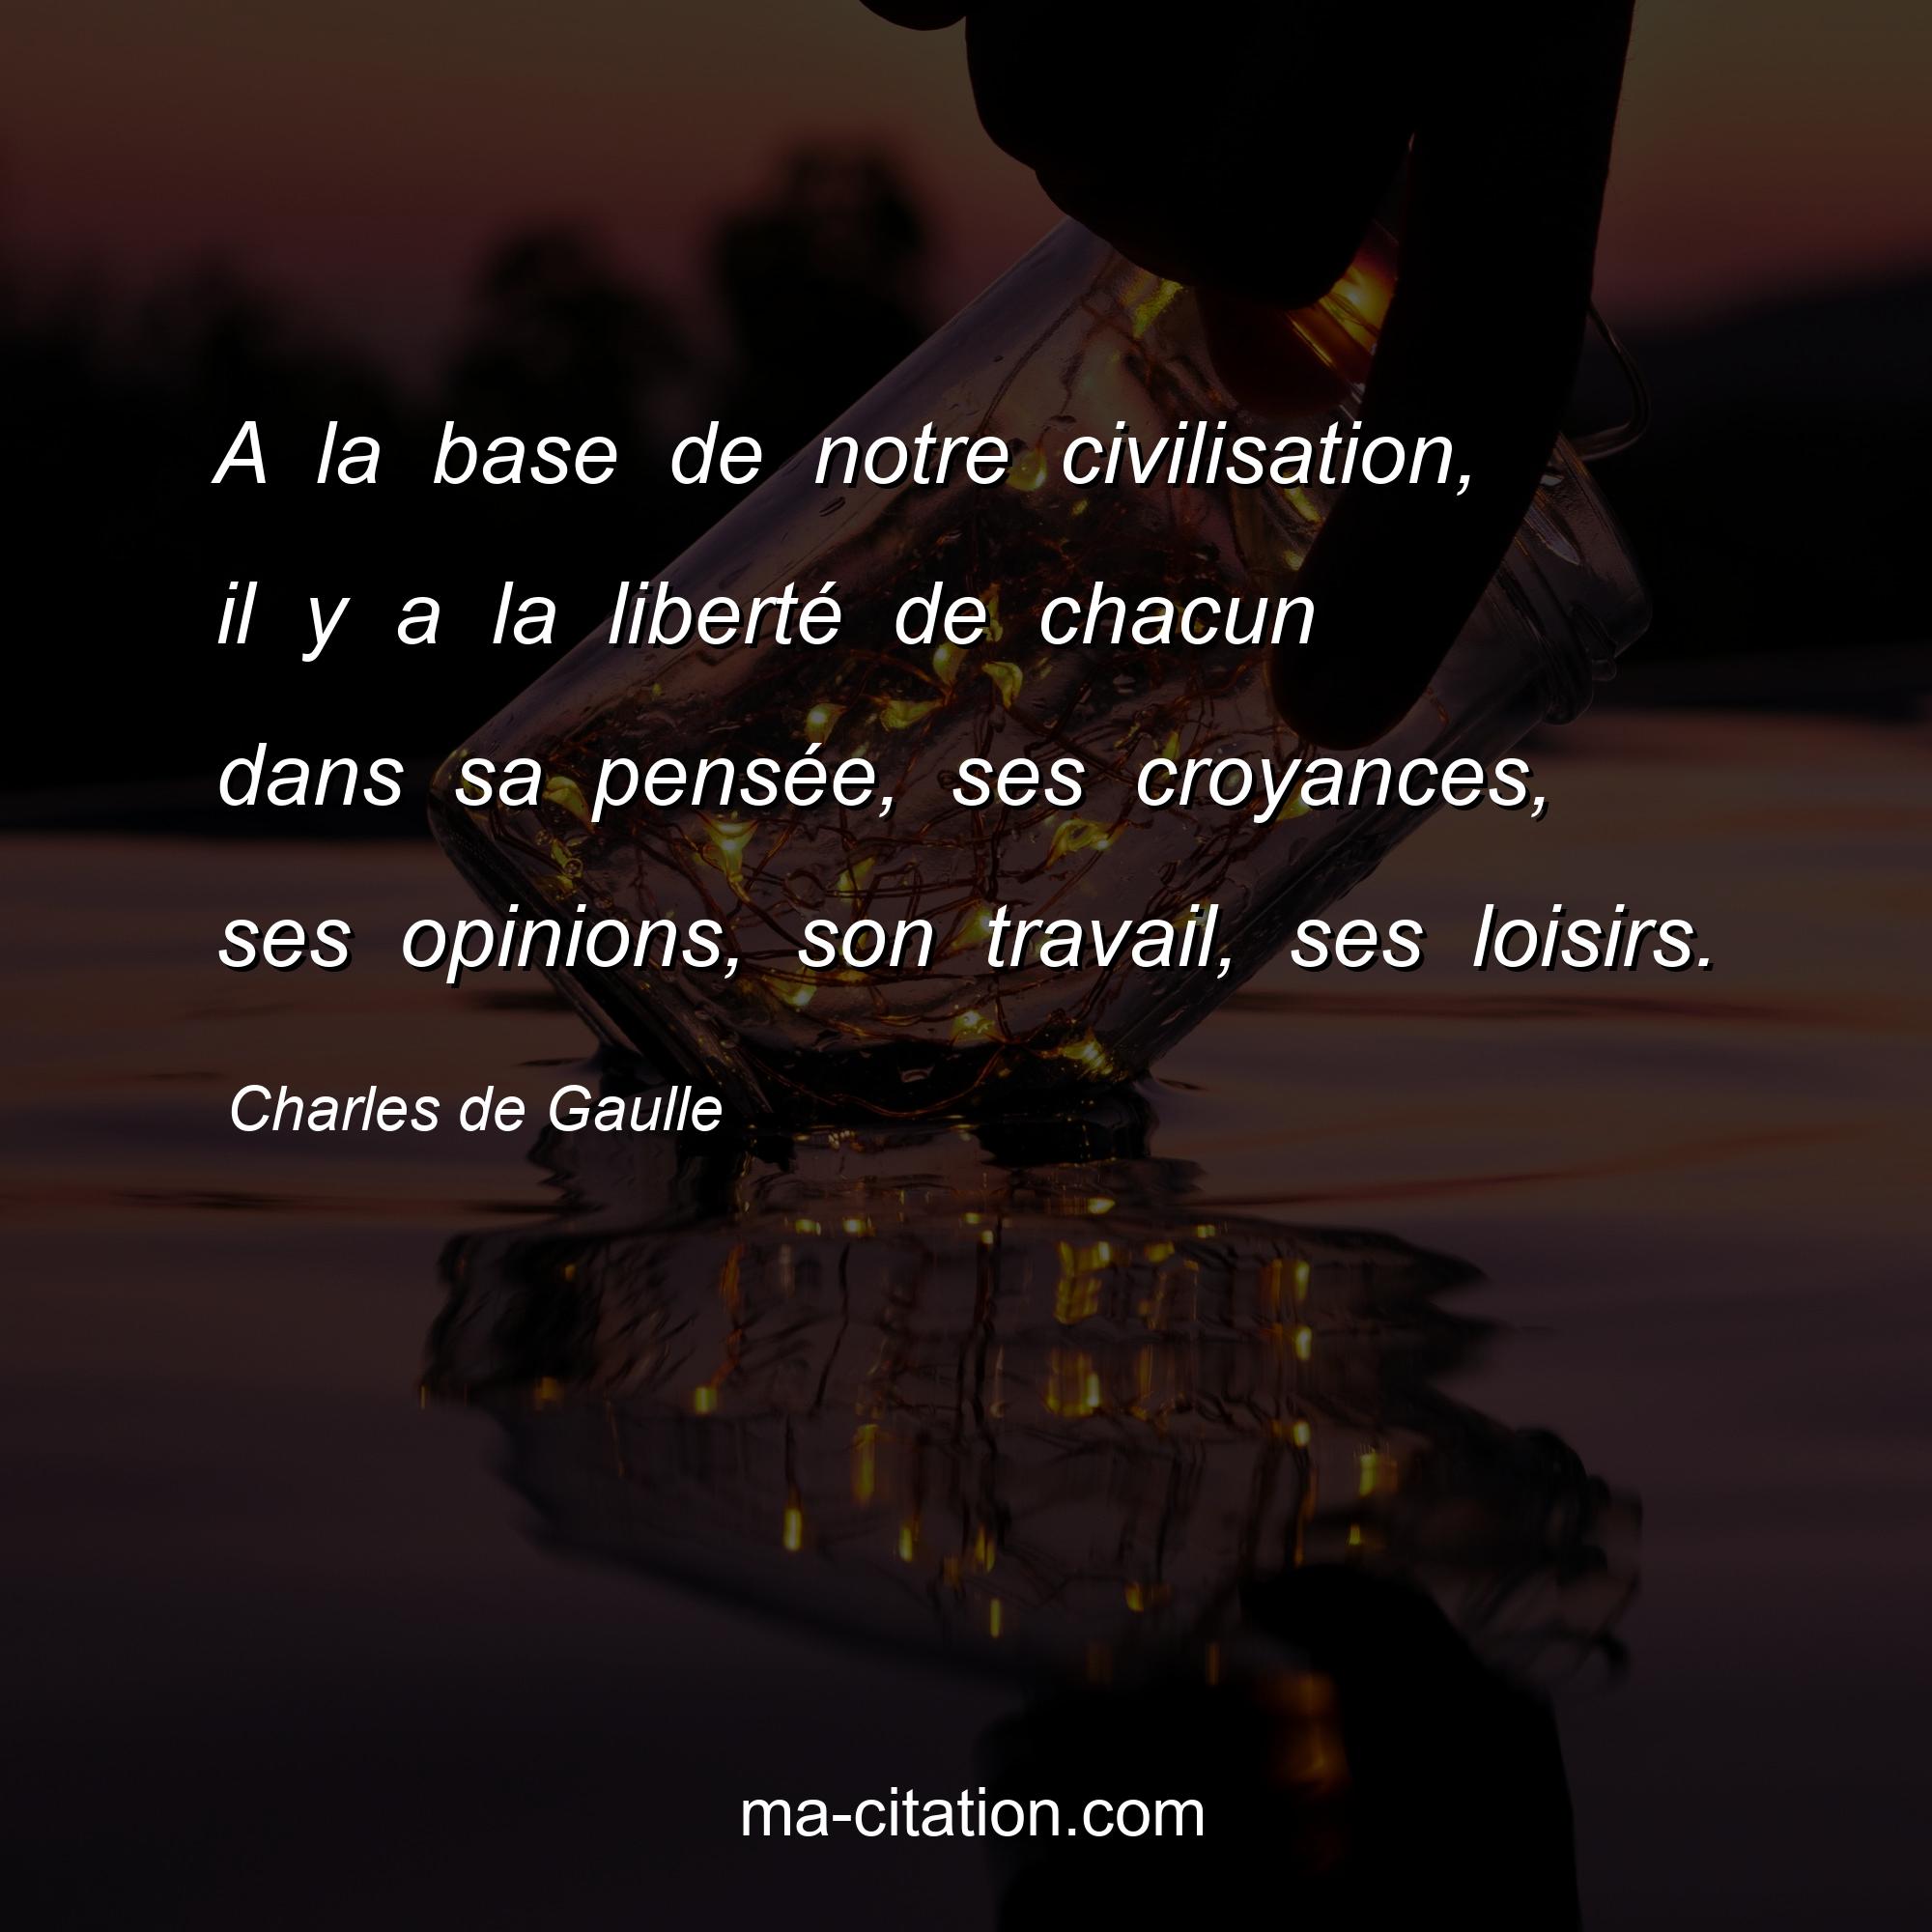 Charles de Gaulle : A la base de notre civilisation, il y a la liberté de chacun dans sa pensée, ses croyances, ses opinions, son travail, ses loisirs.